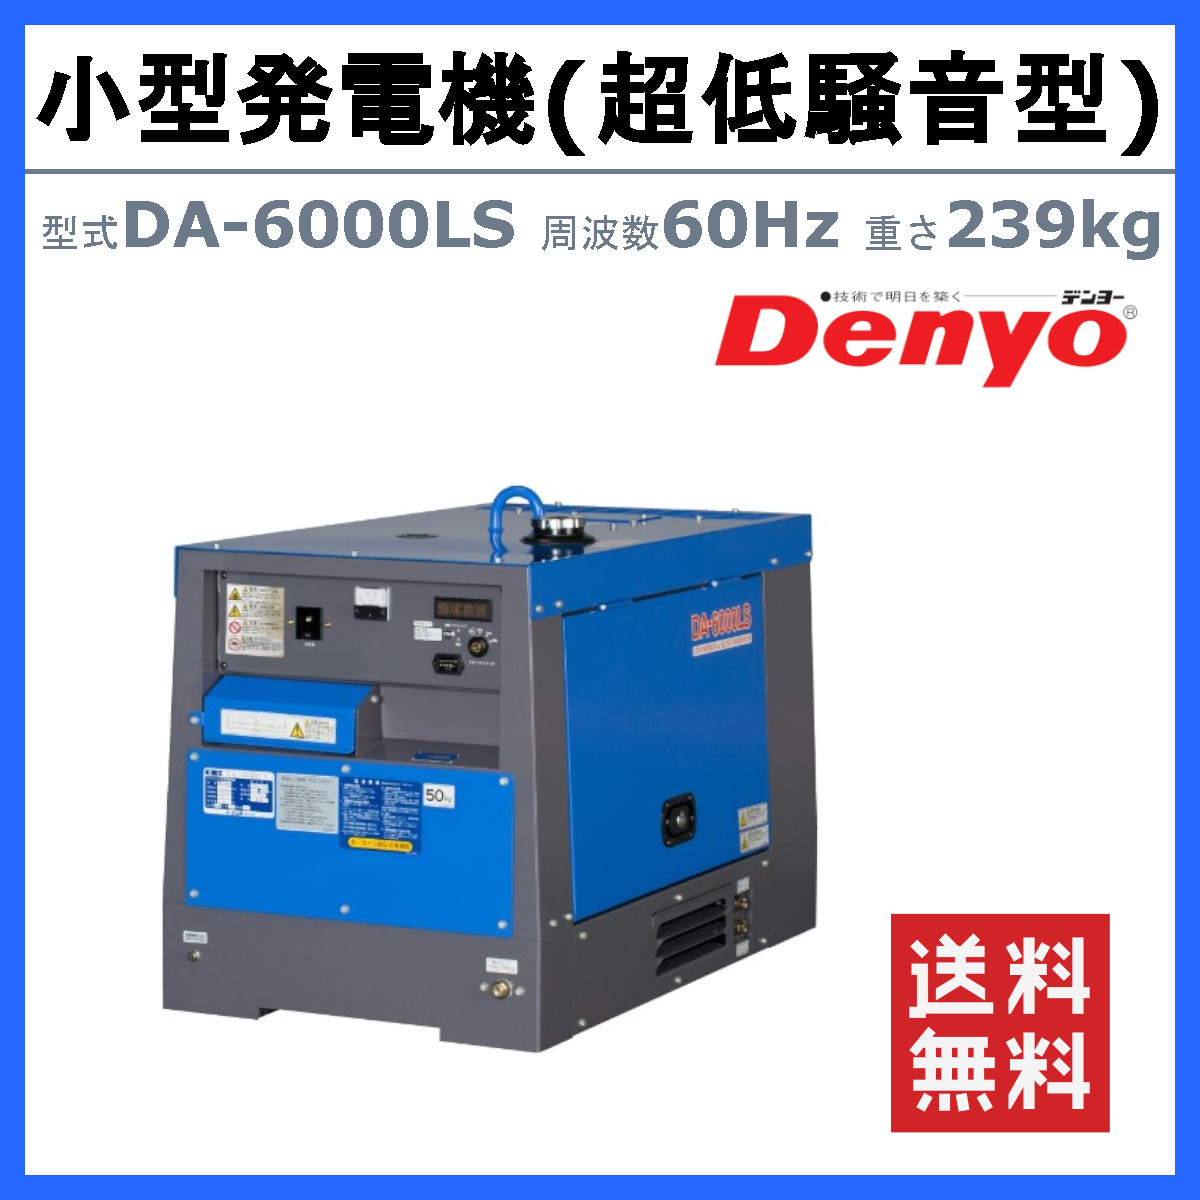 デンヨー 発電機 6.0kva DA-6000LS 60Hz 100V 200V ディーゼル ディーゼルエンジン発電機 小型発電機 超低騒音型 防音型  Denyo